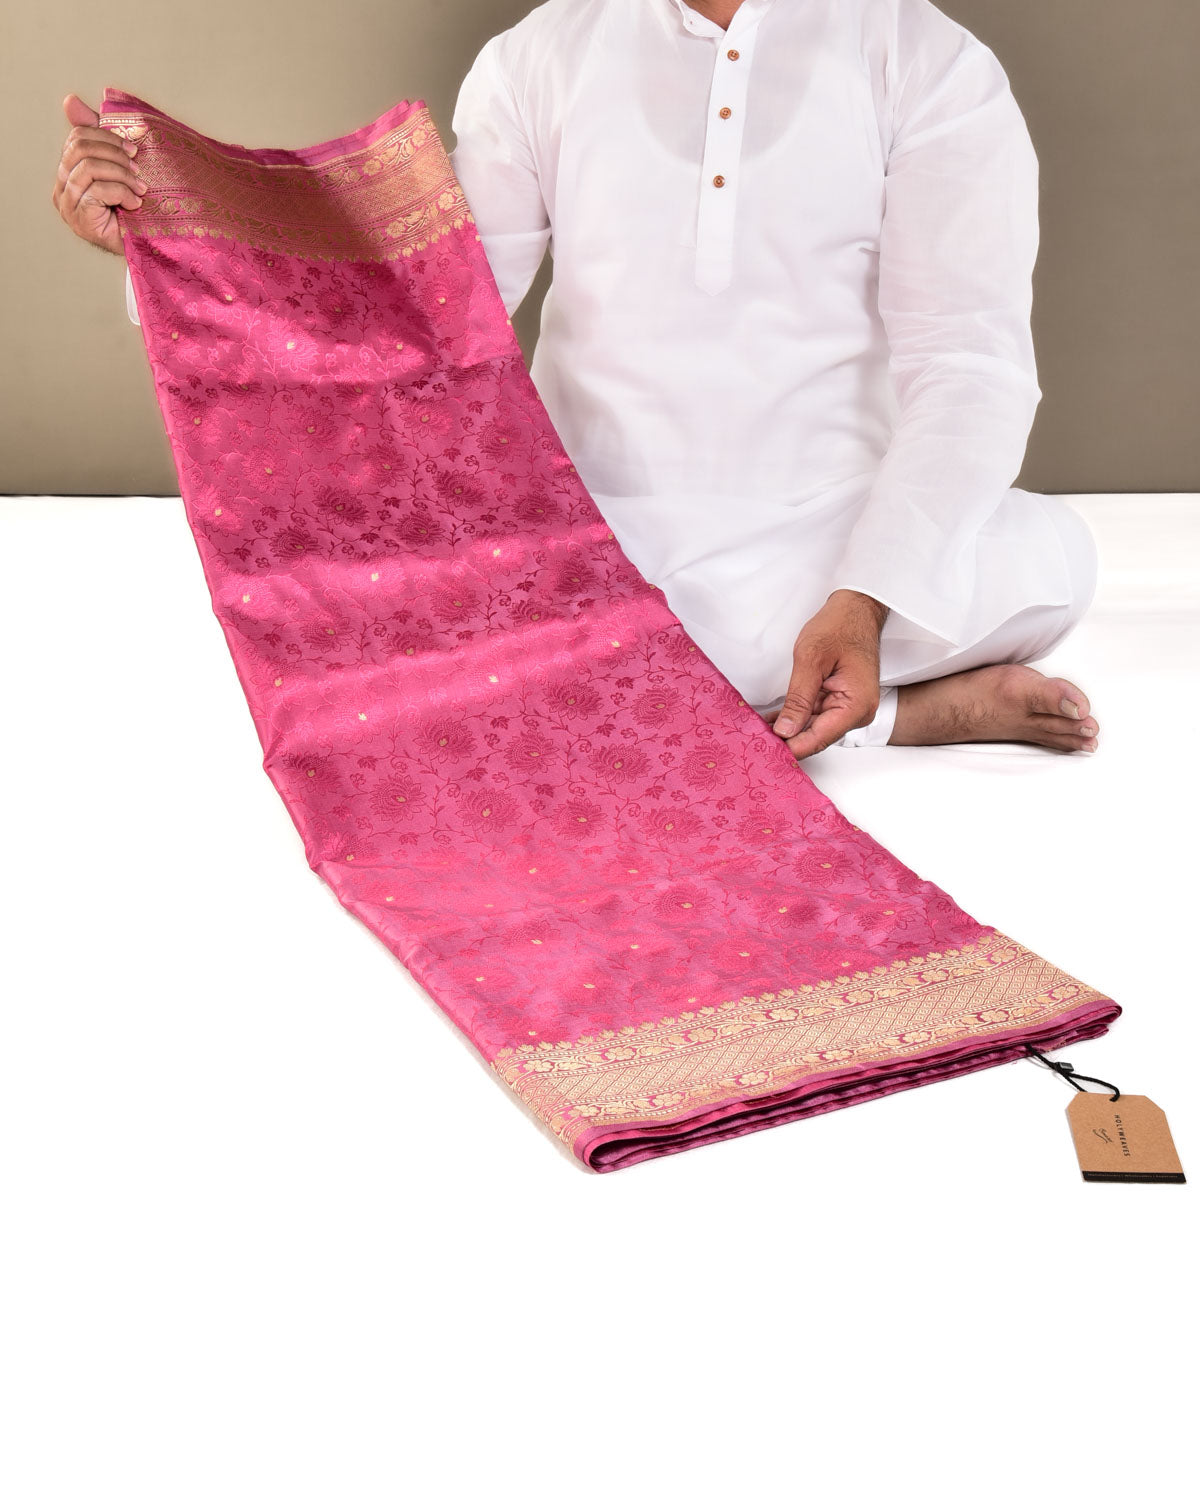 Shot Pink Banarasi Kamal Jaal Satin Tanchoi Brocade Handwoven Katan Silk Saree with Gold Zari Accents - By HolyWeaves, Benares